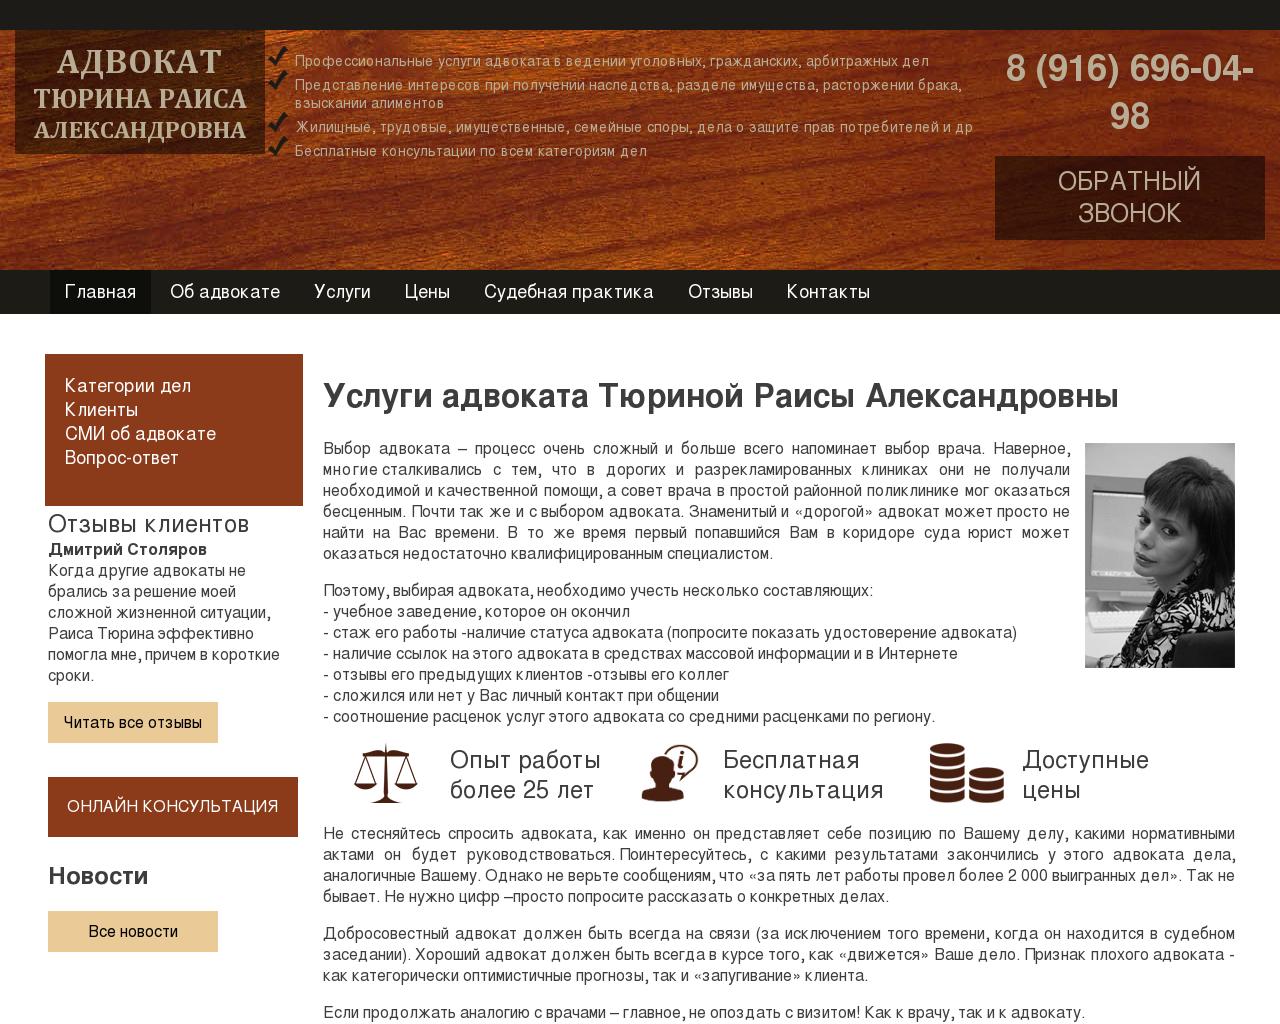 Изображение сайта advokat-turina.ru в разрешении 1280x1024